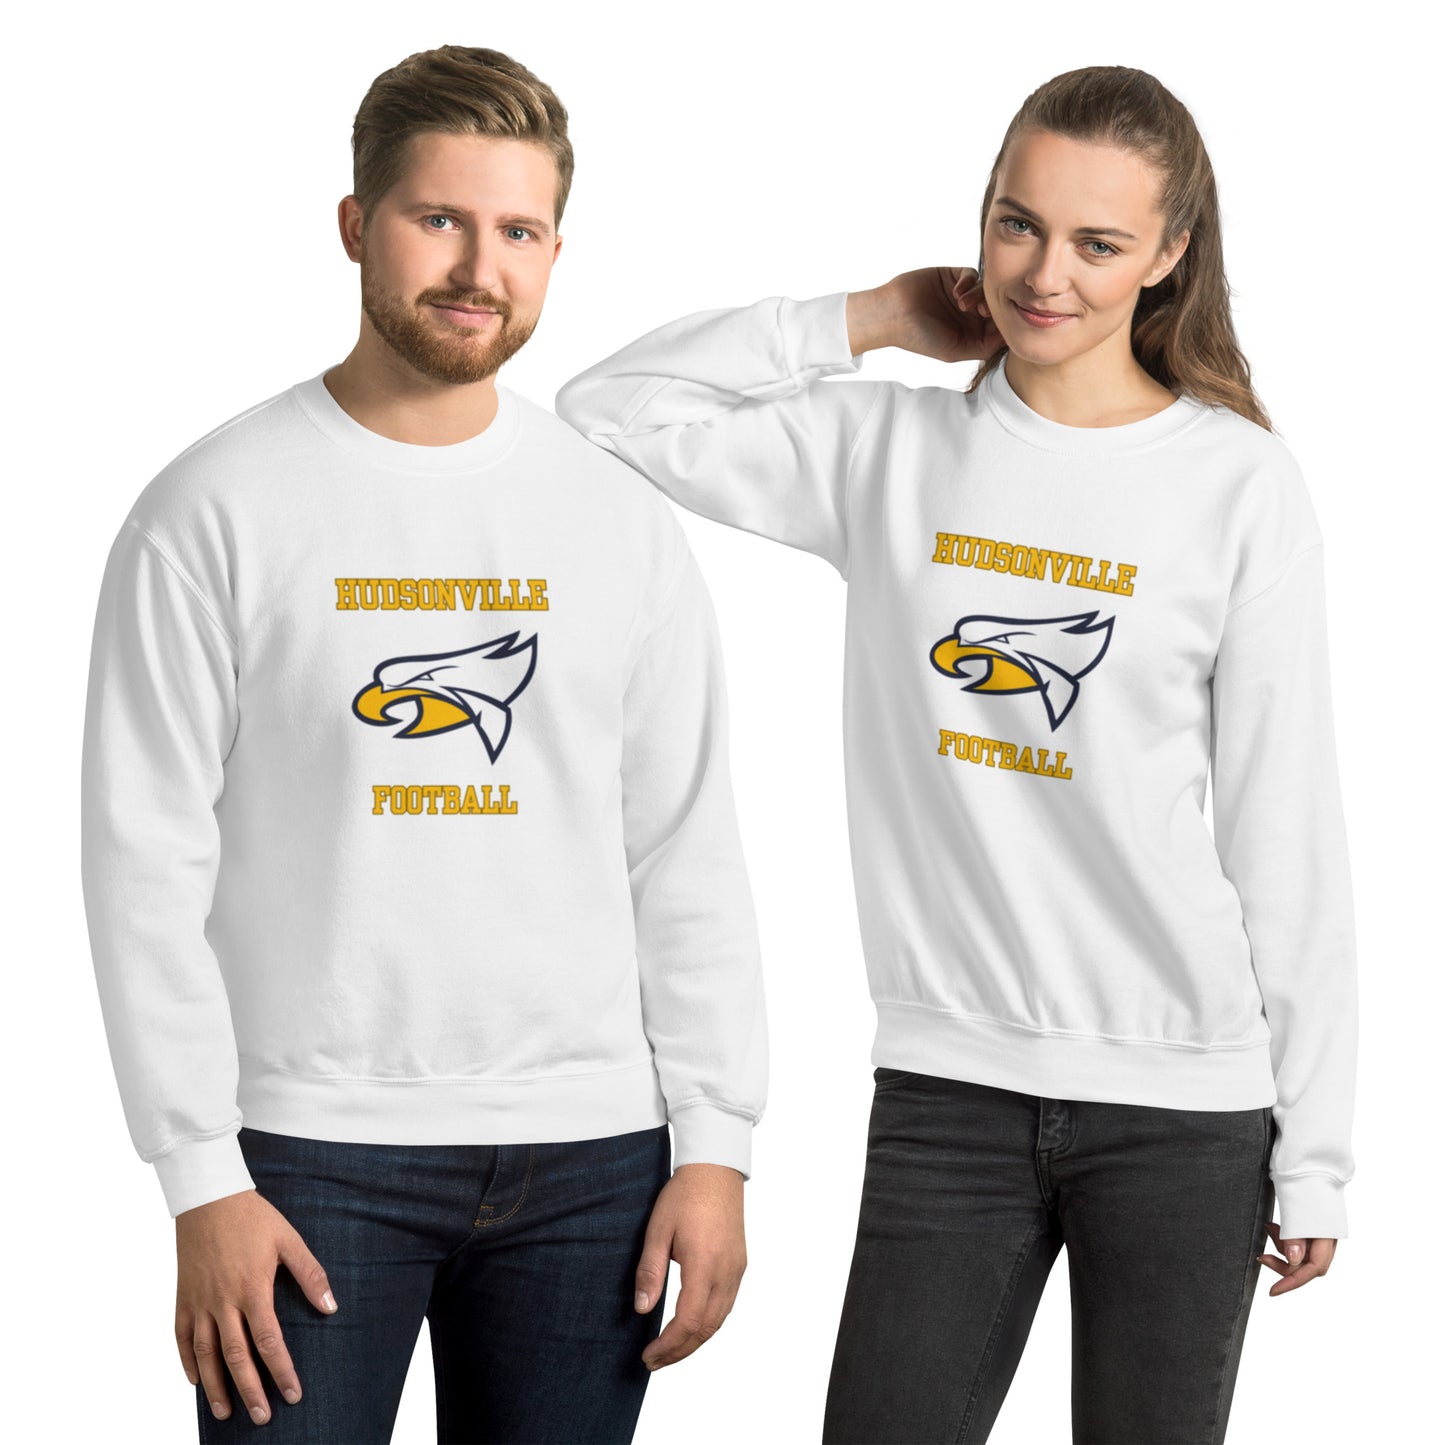 Hudsonville Football Unisex Sweatshirt